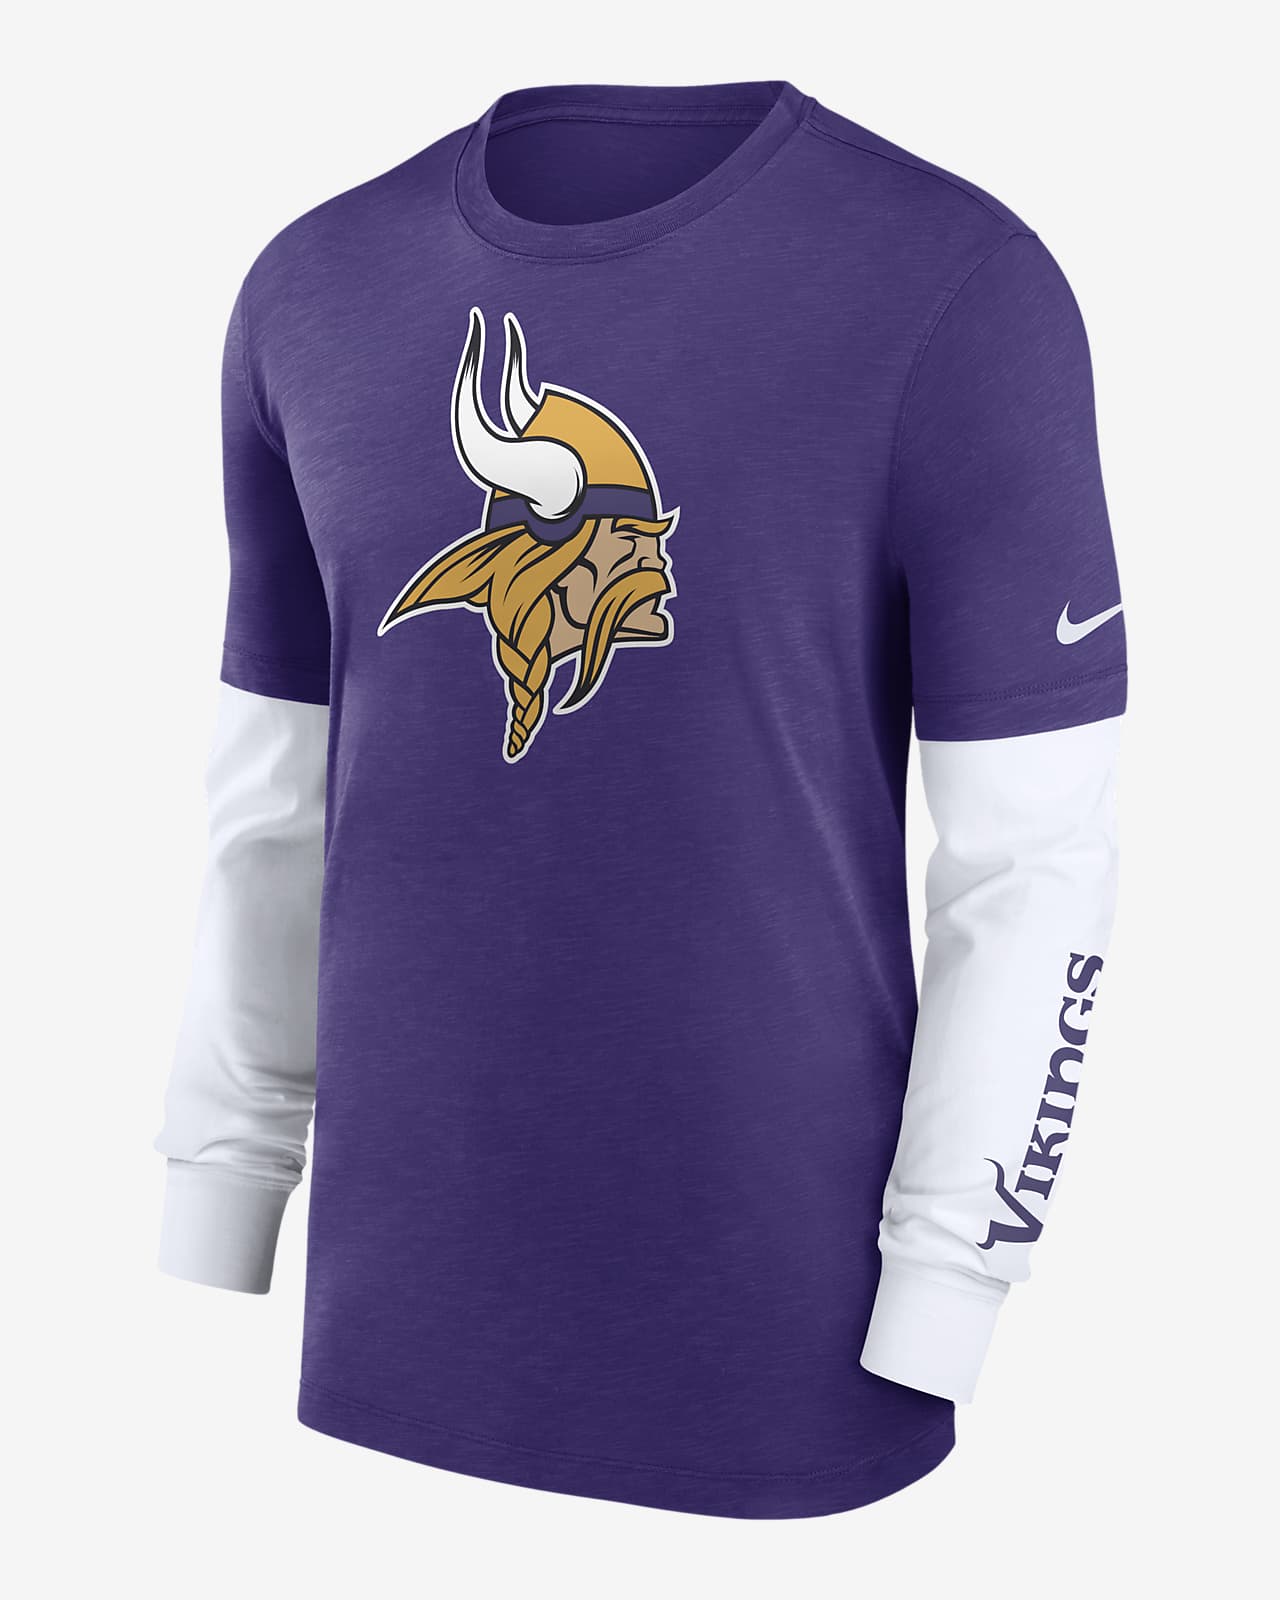 Minnesota Vikings Nike Men's NFL Long-Sleeve Top in Purple, Size: Medium | 00BY01TM9M-05G